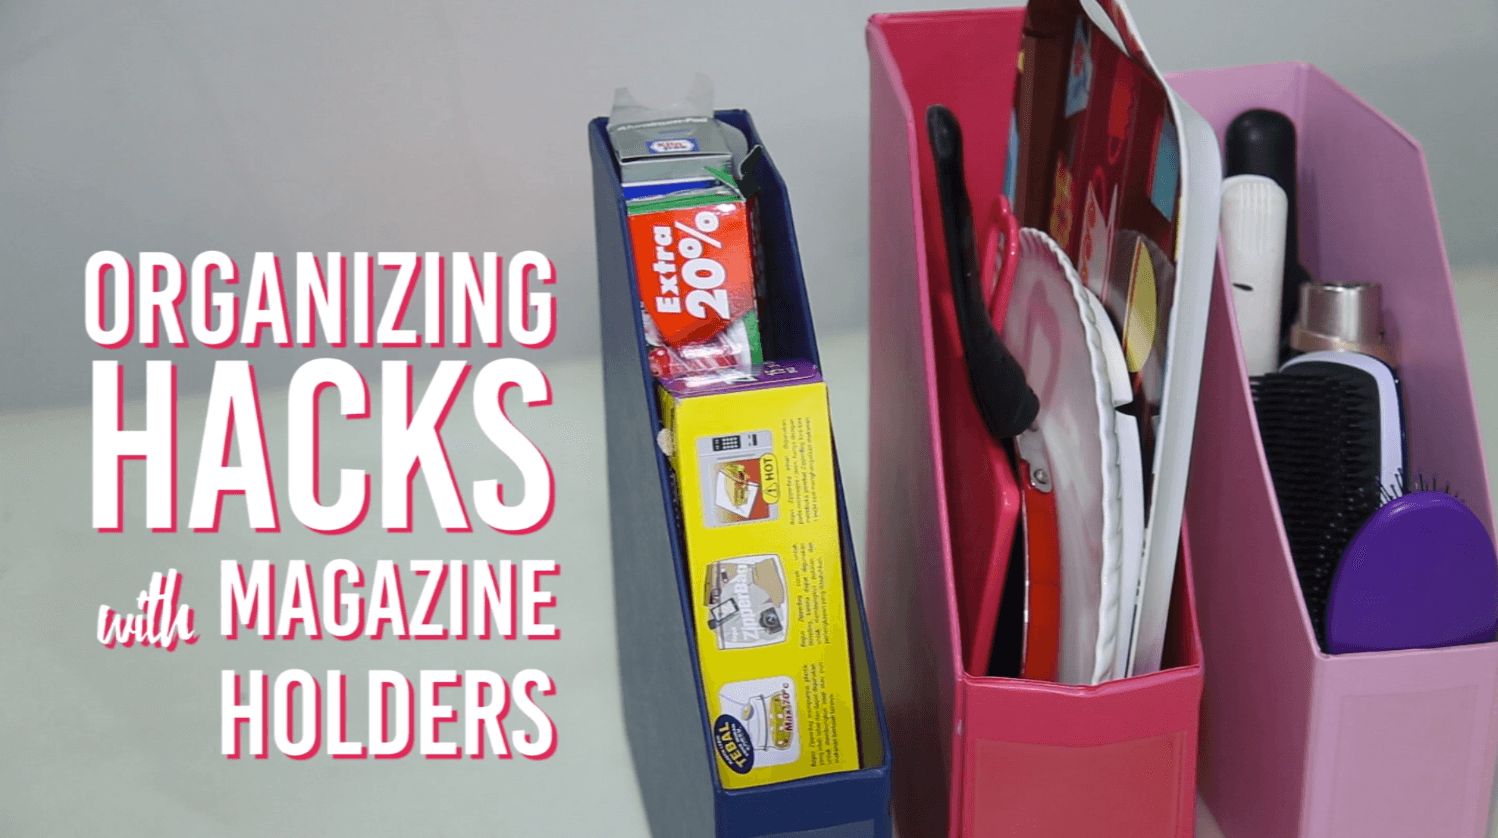 Organizing Hacks with Magazine Holders